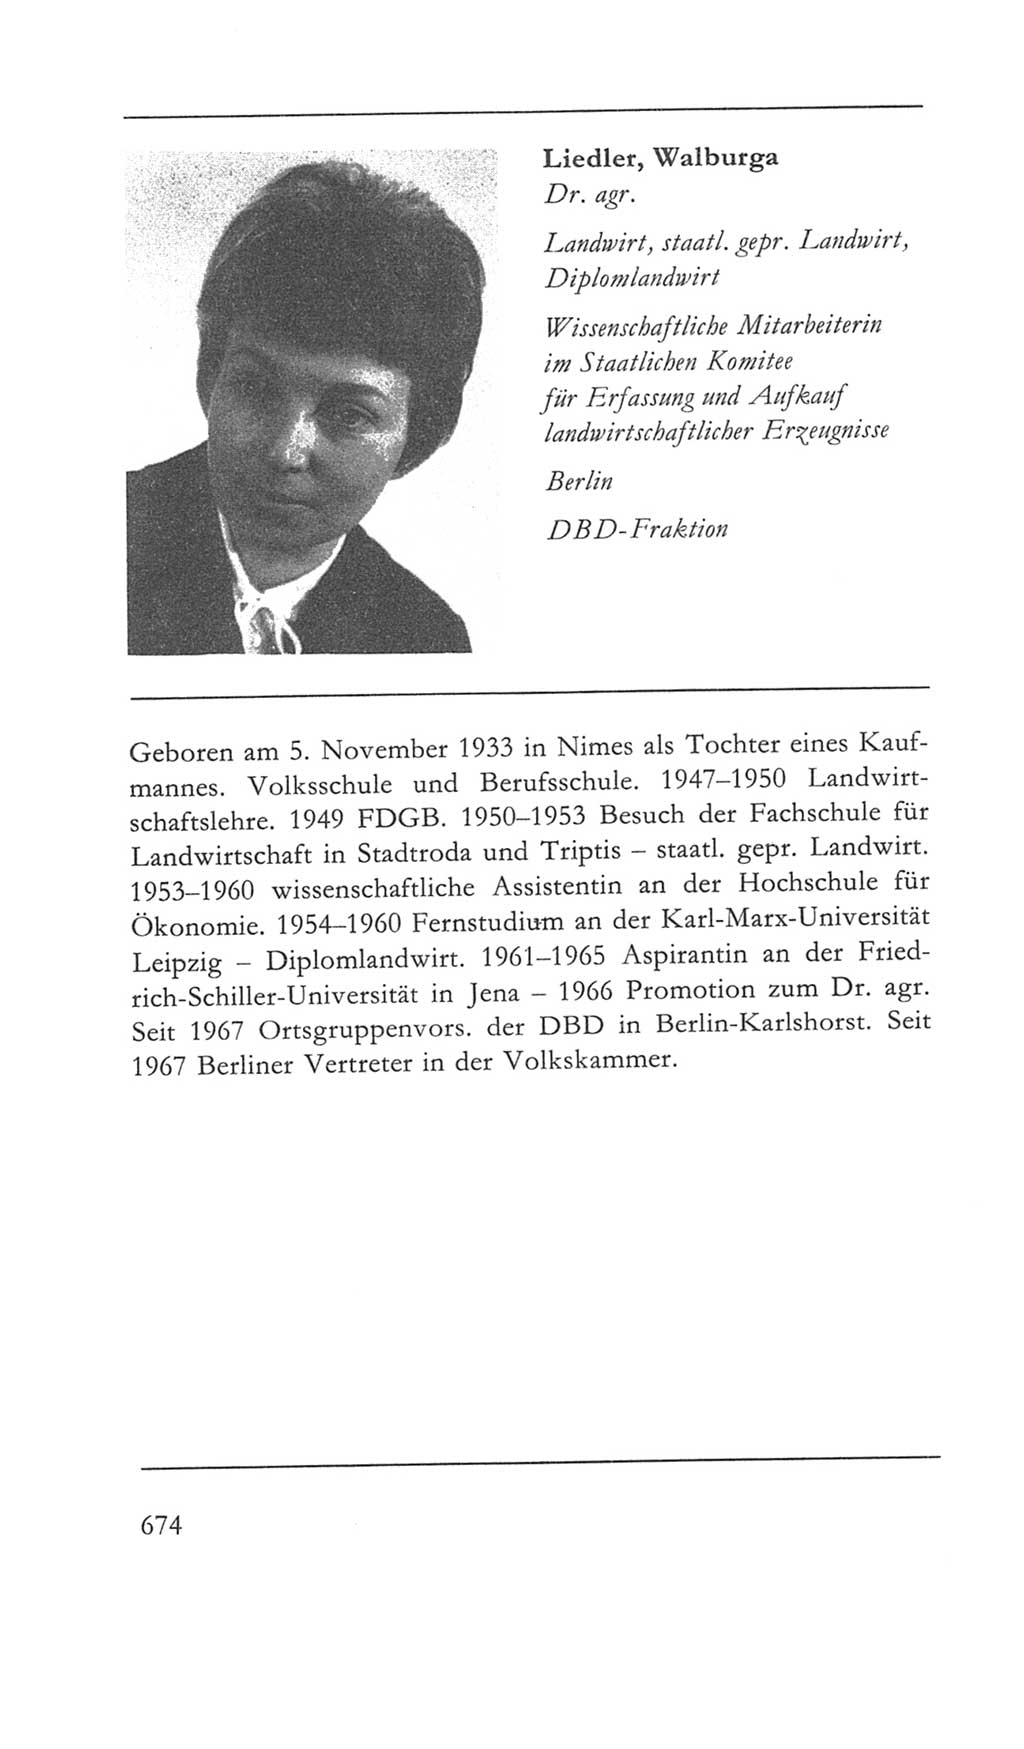 Volkskammer (VK) der Deutschen Demokratischen Republik (DDR) 5. Wahlperiode 1967-1971, Seite 674 (VK. DDR 5. WP. 1967-1971, S. 674)